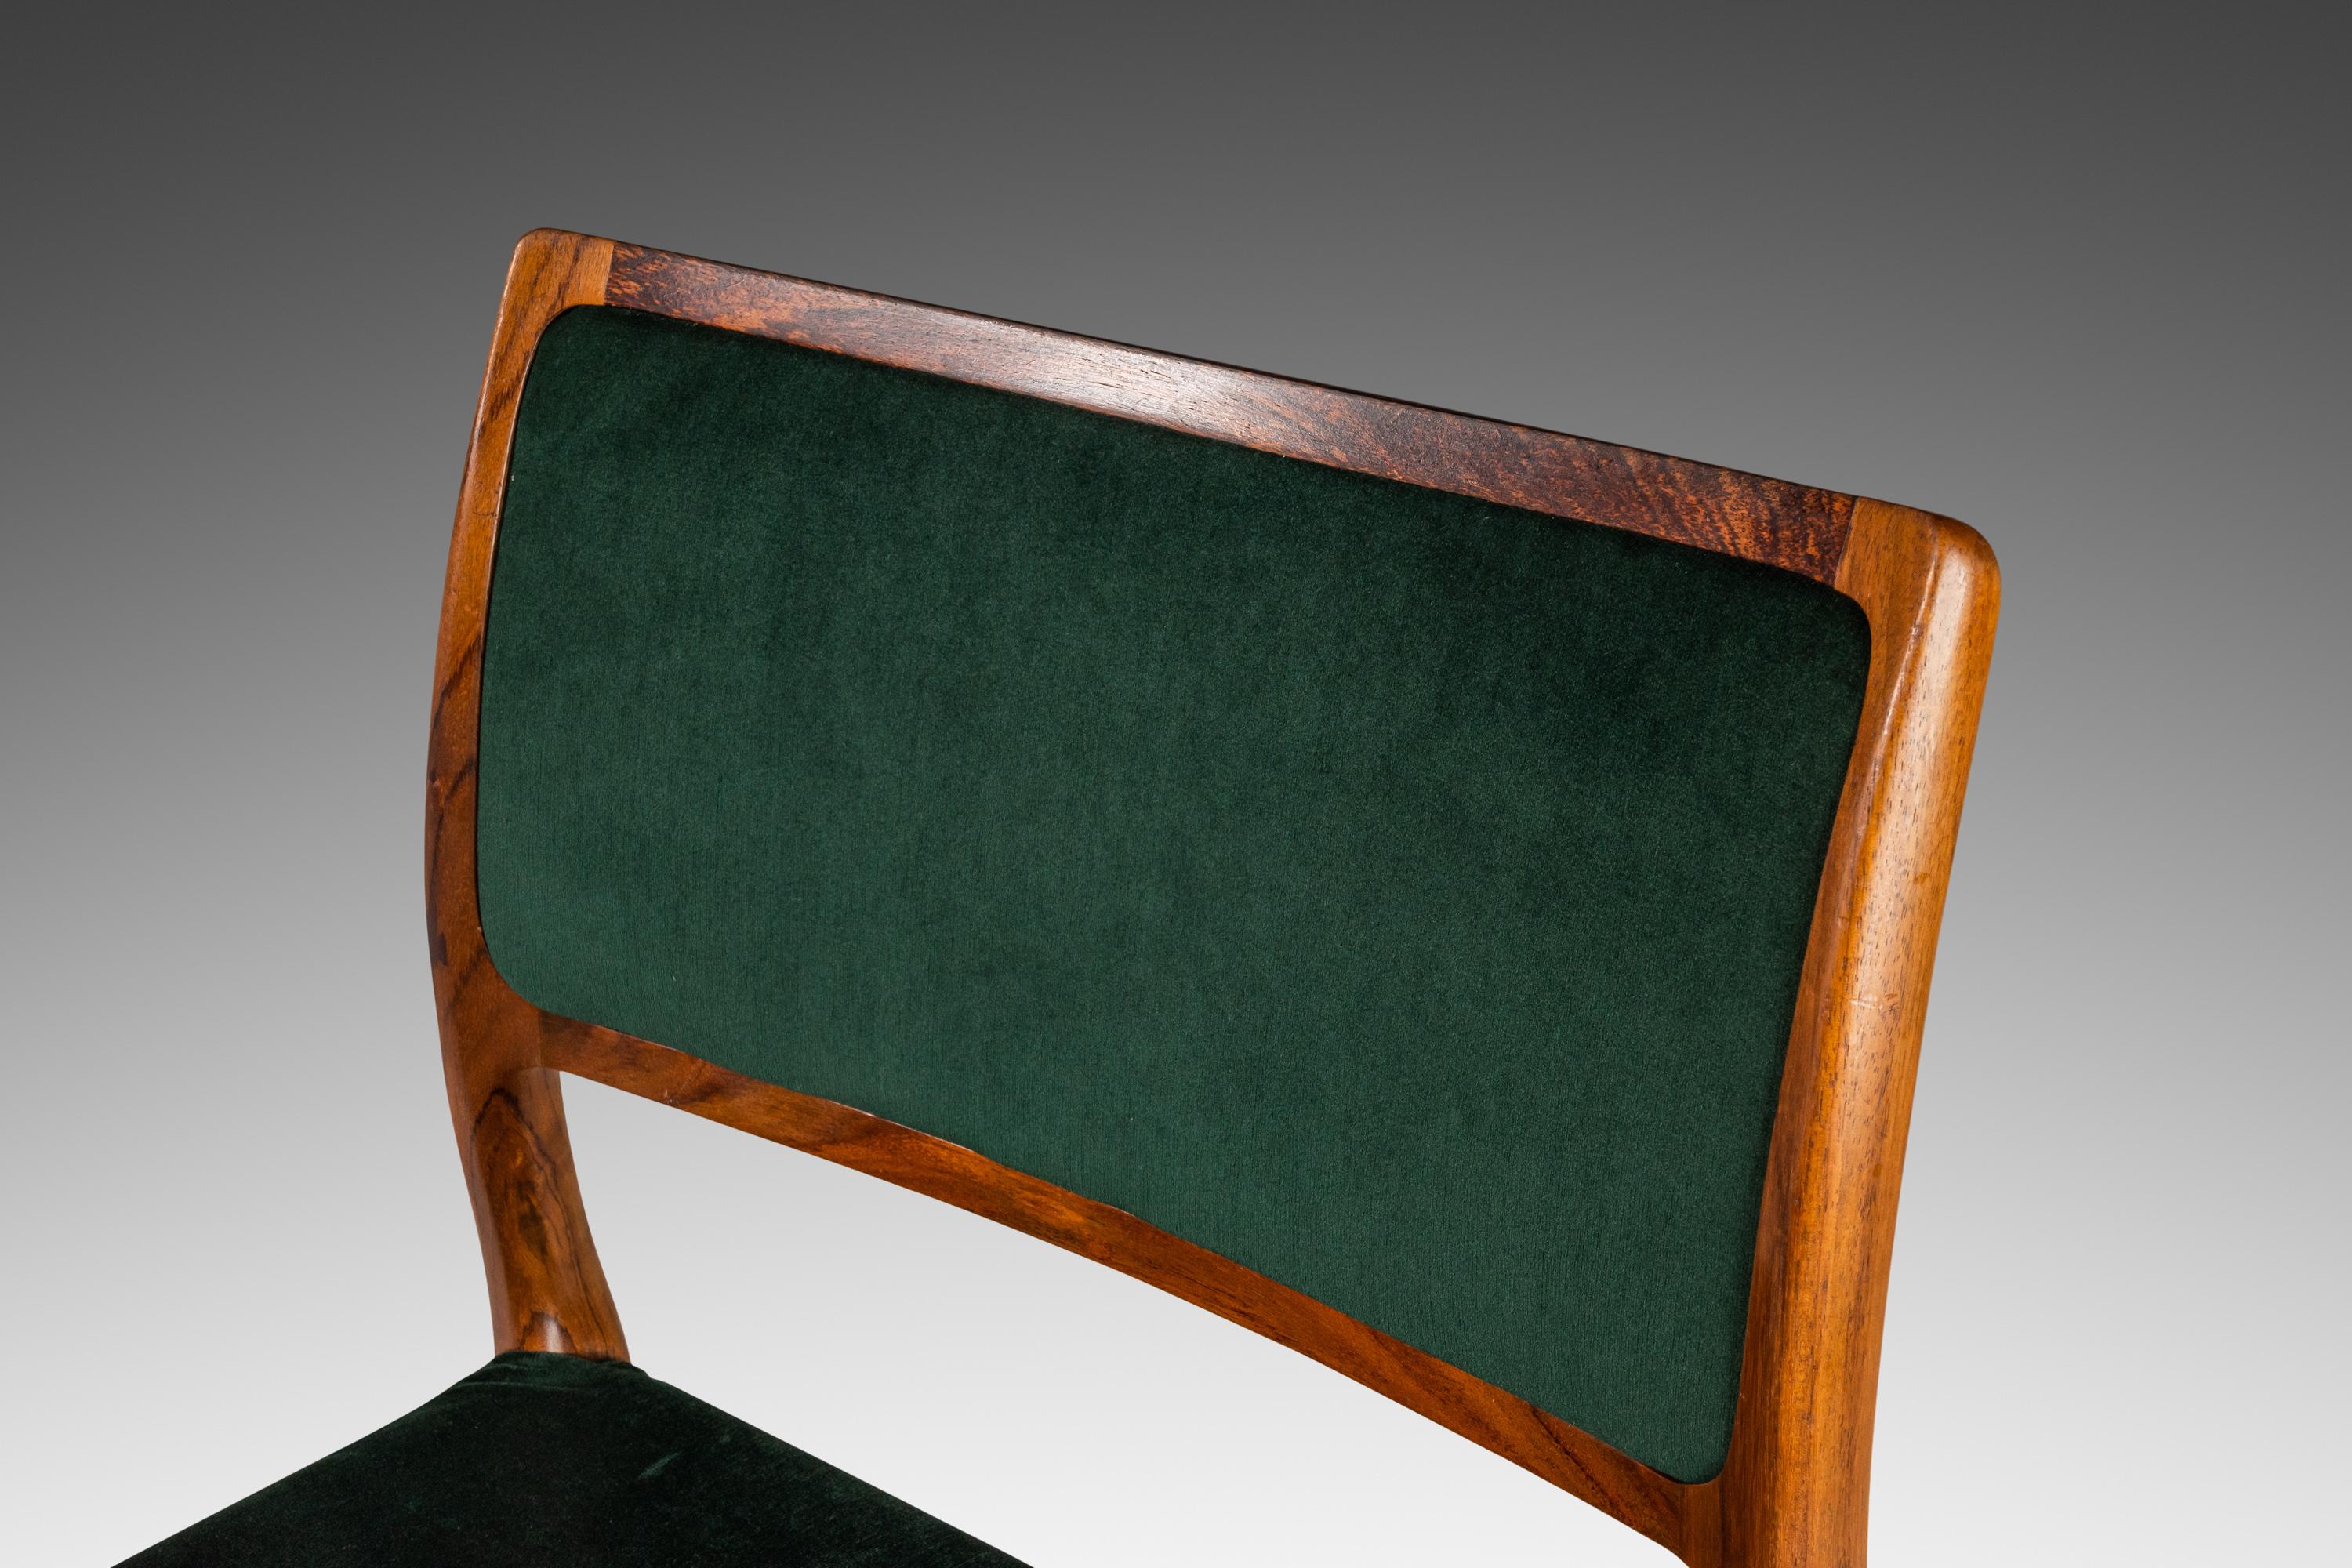 Wir stellen einen seltenen Beistellstuhl Modell 80 vor, der von Niels Otto Møller für J.L. entworfen wurde. Mollers Mobelfabrik, hergestellt in den 1960er Jahren in Dänemark. Dieser atemberaubende Stuhl ist aus massivem brasilianischem